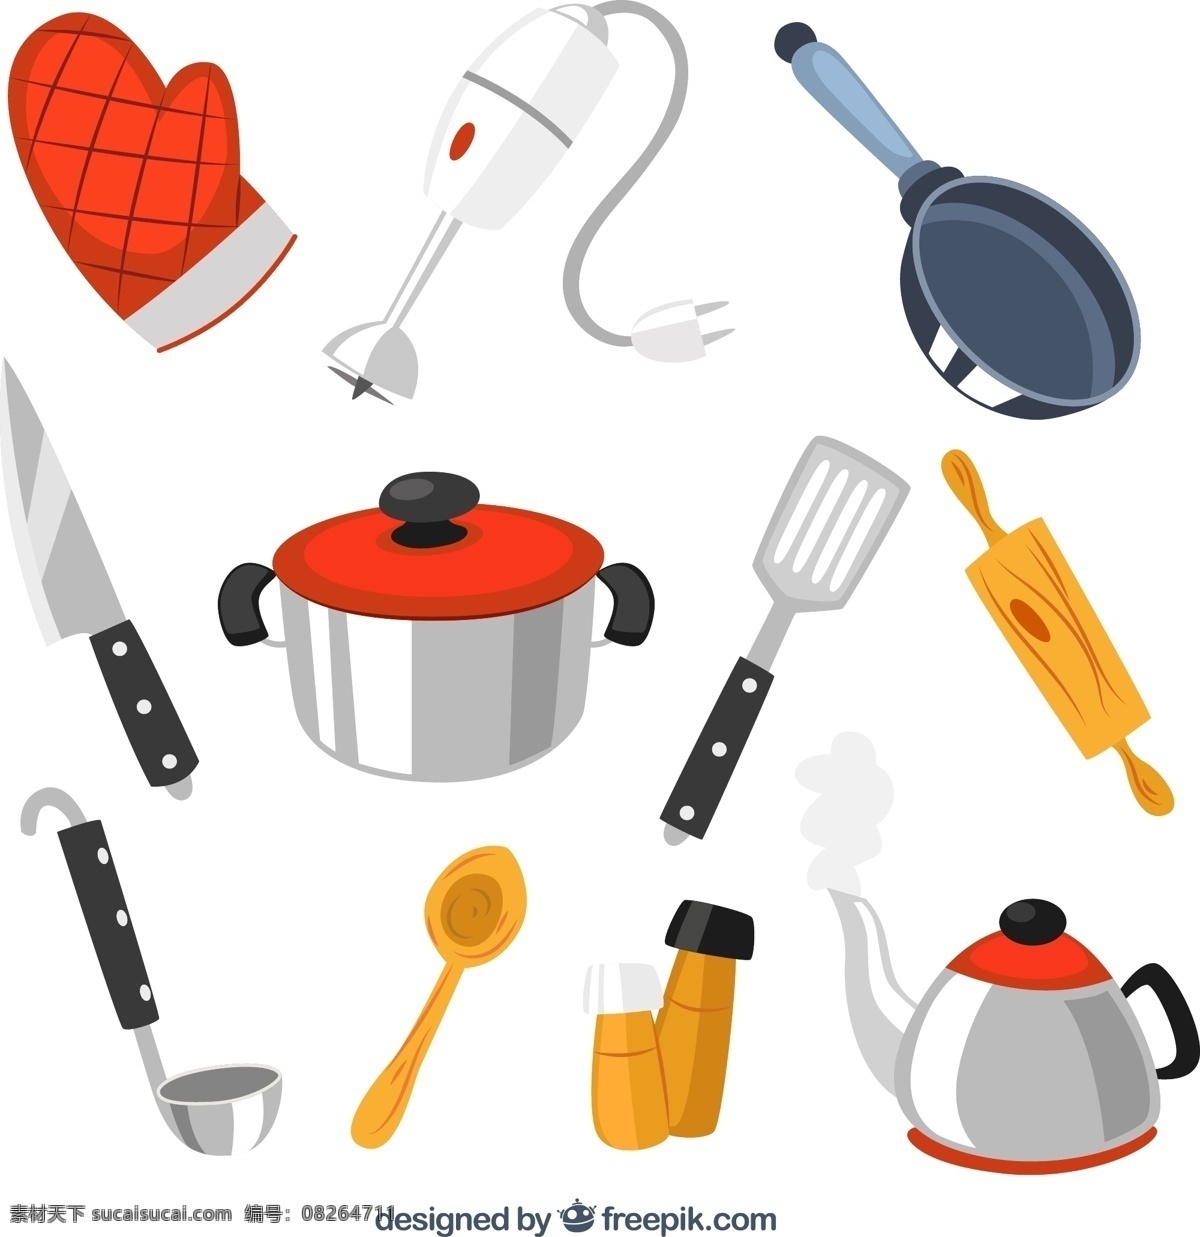 卡通厨具 隔热手套 电动打蛋器 平底锅 炖锅 菜刀 擀面棍 铲子 勺子 热水壶 调料瓶 厨具 厨房 厨房用品